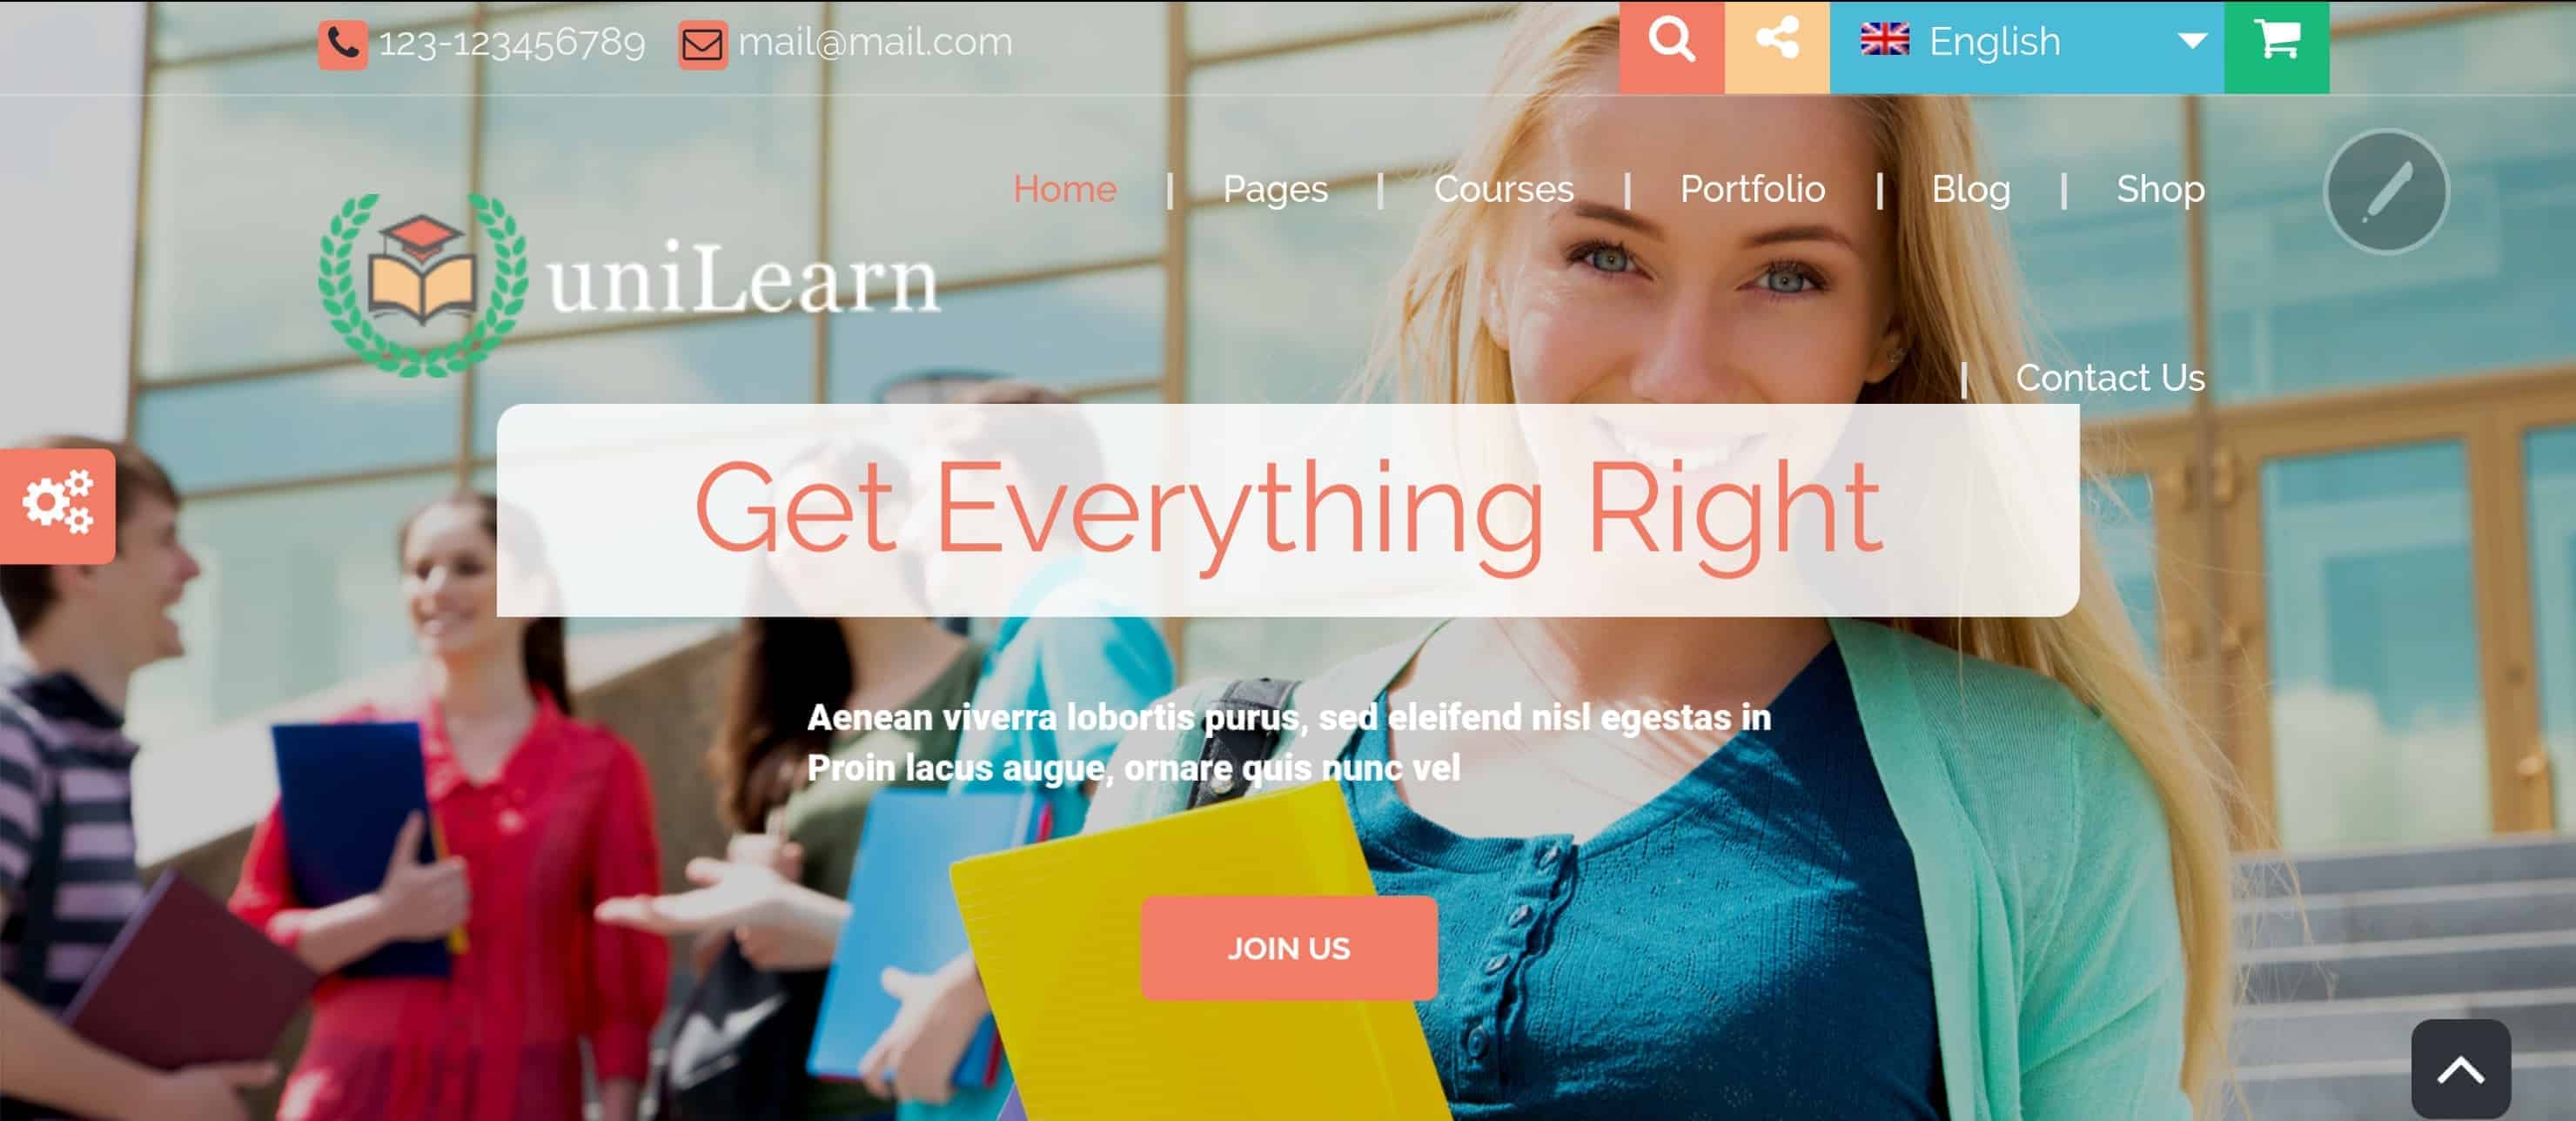 UniLearn - Motyw WordPress dla szkół i sprzedaży / obsługi kursów online